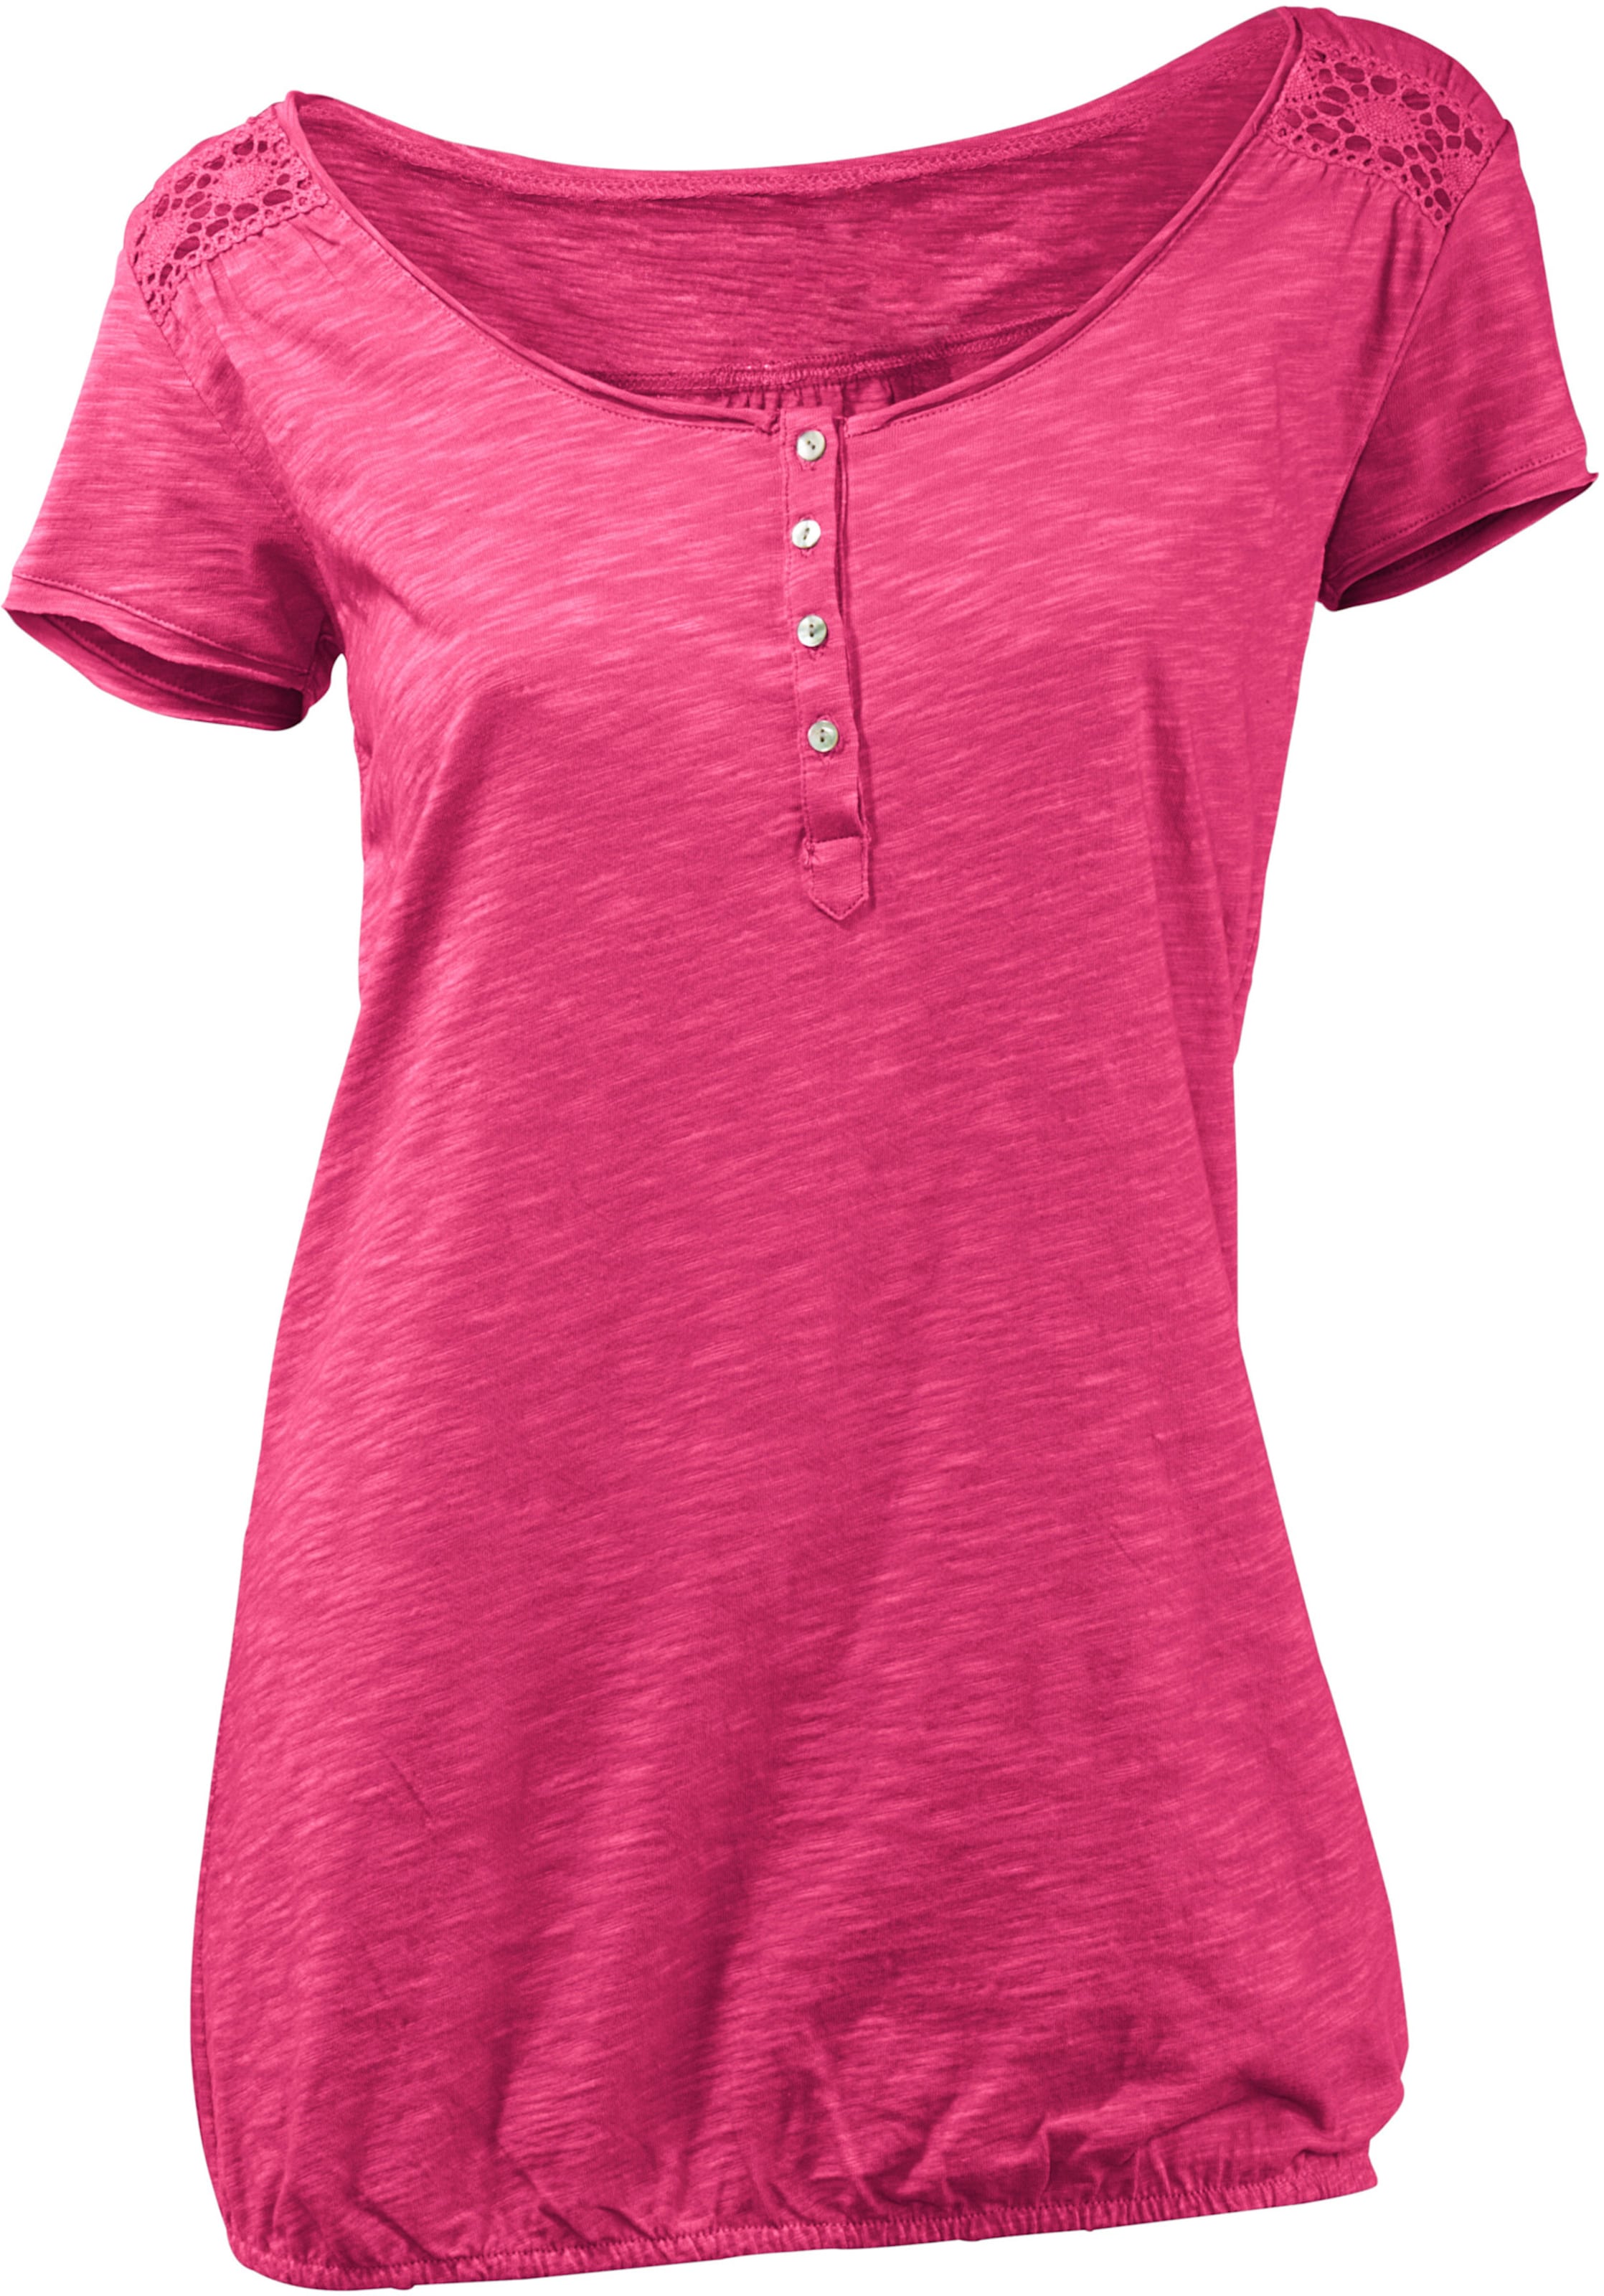 Witt Damen Rundhals-Shirt, pink